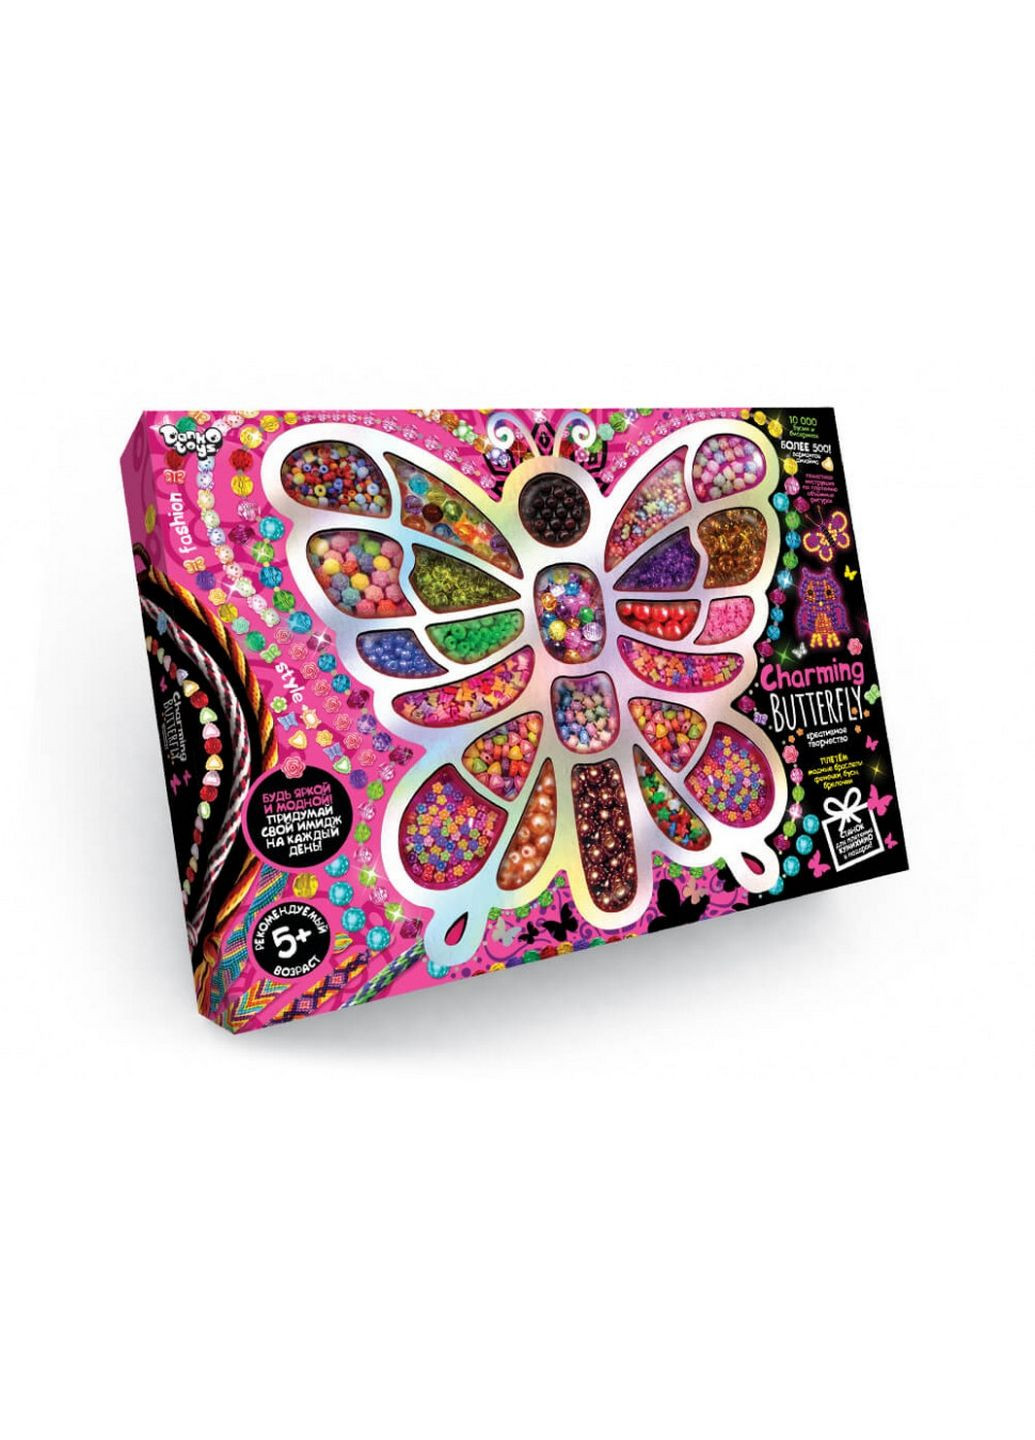 Набір бісеру "Charming Butterfly" великий бісер 30,5х41х3,5 см Danko Toys (279319932)